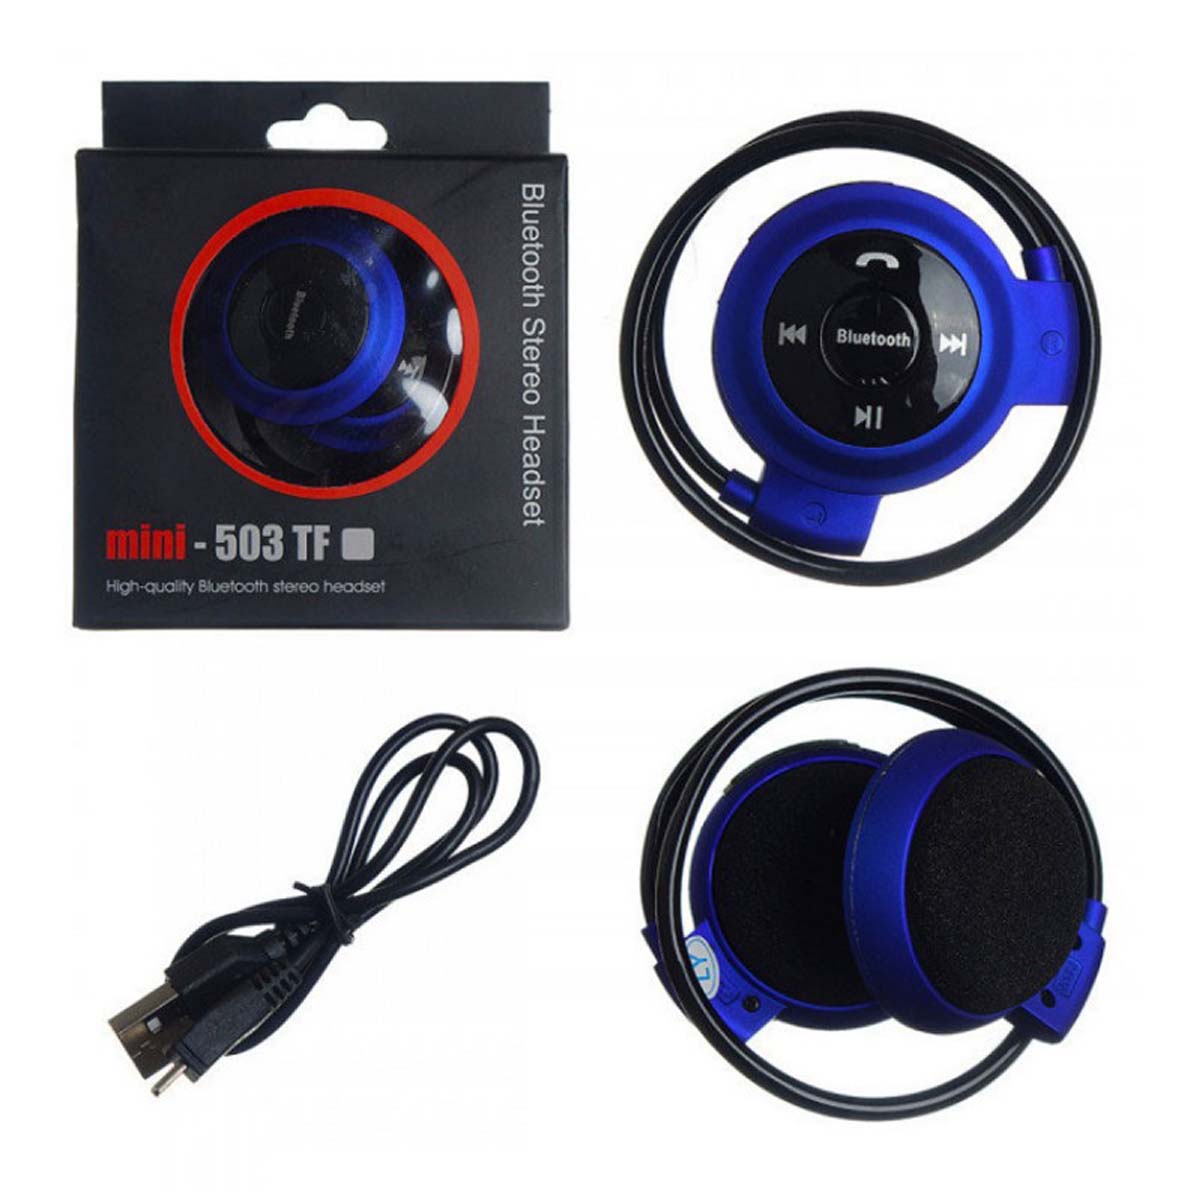 Гарнитура (наушники с микрофоном) беспроводная накладная, TF-503 mini Sport, цвет синий